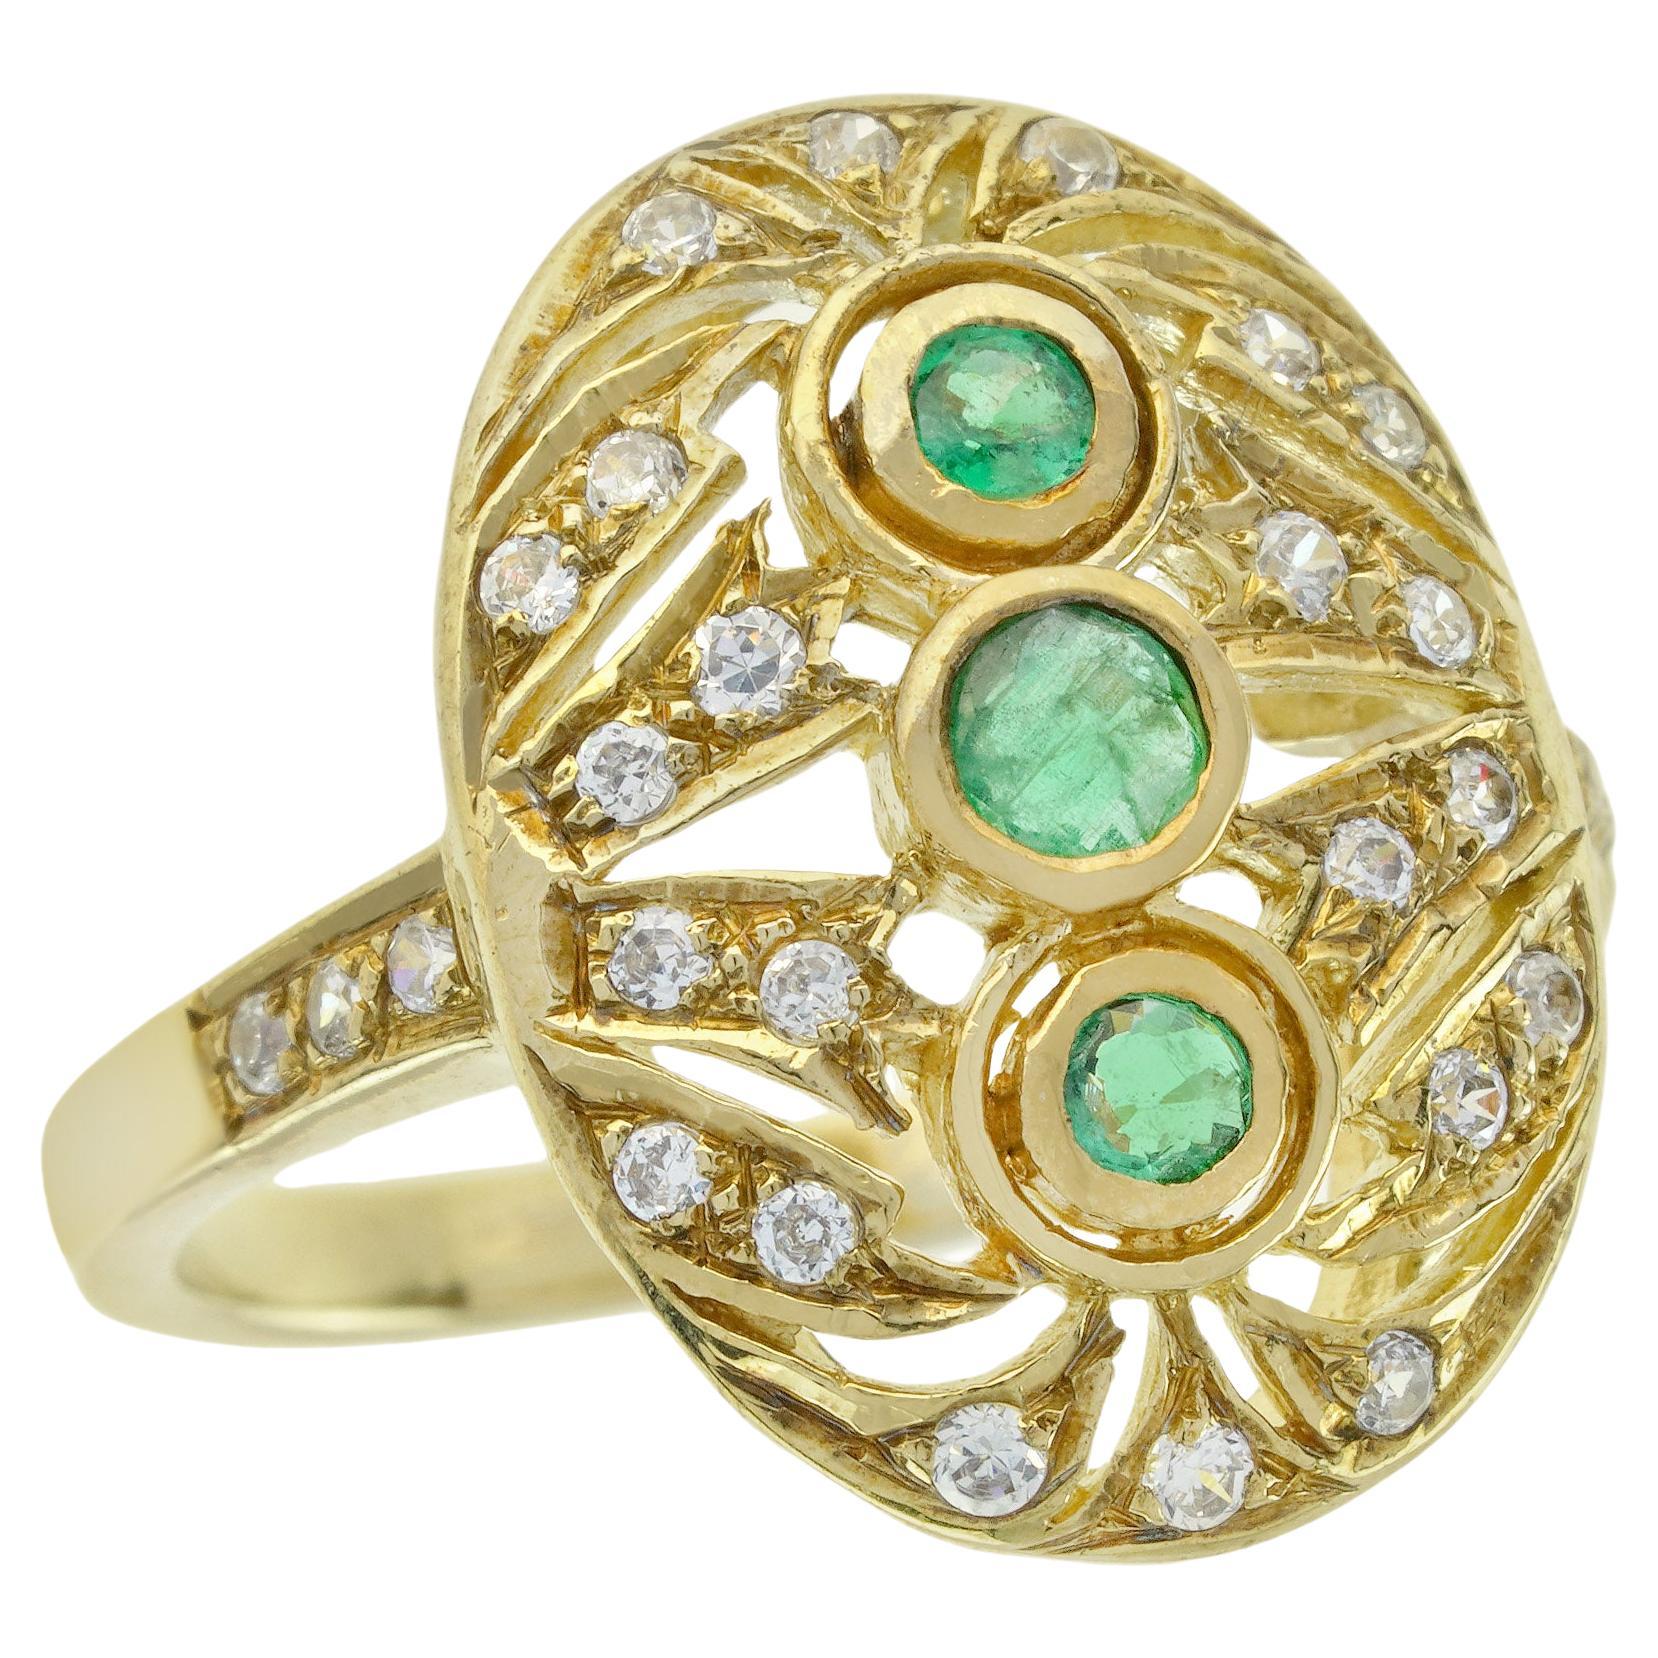 Natürlicher Smaragd und Diamant Vintage-Ring mit drei Steinen im Vintage-Stil aus massivem 14K Gold